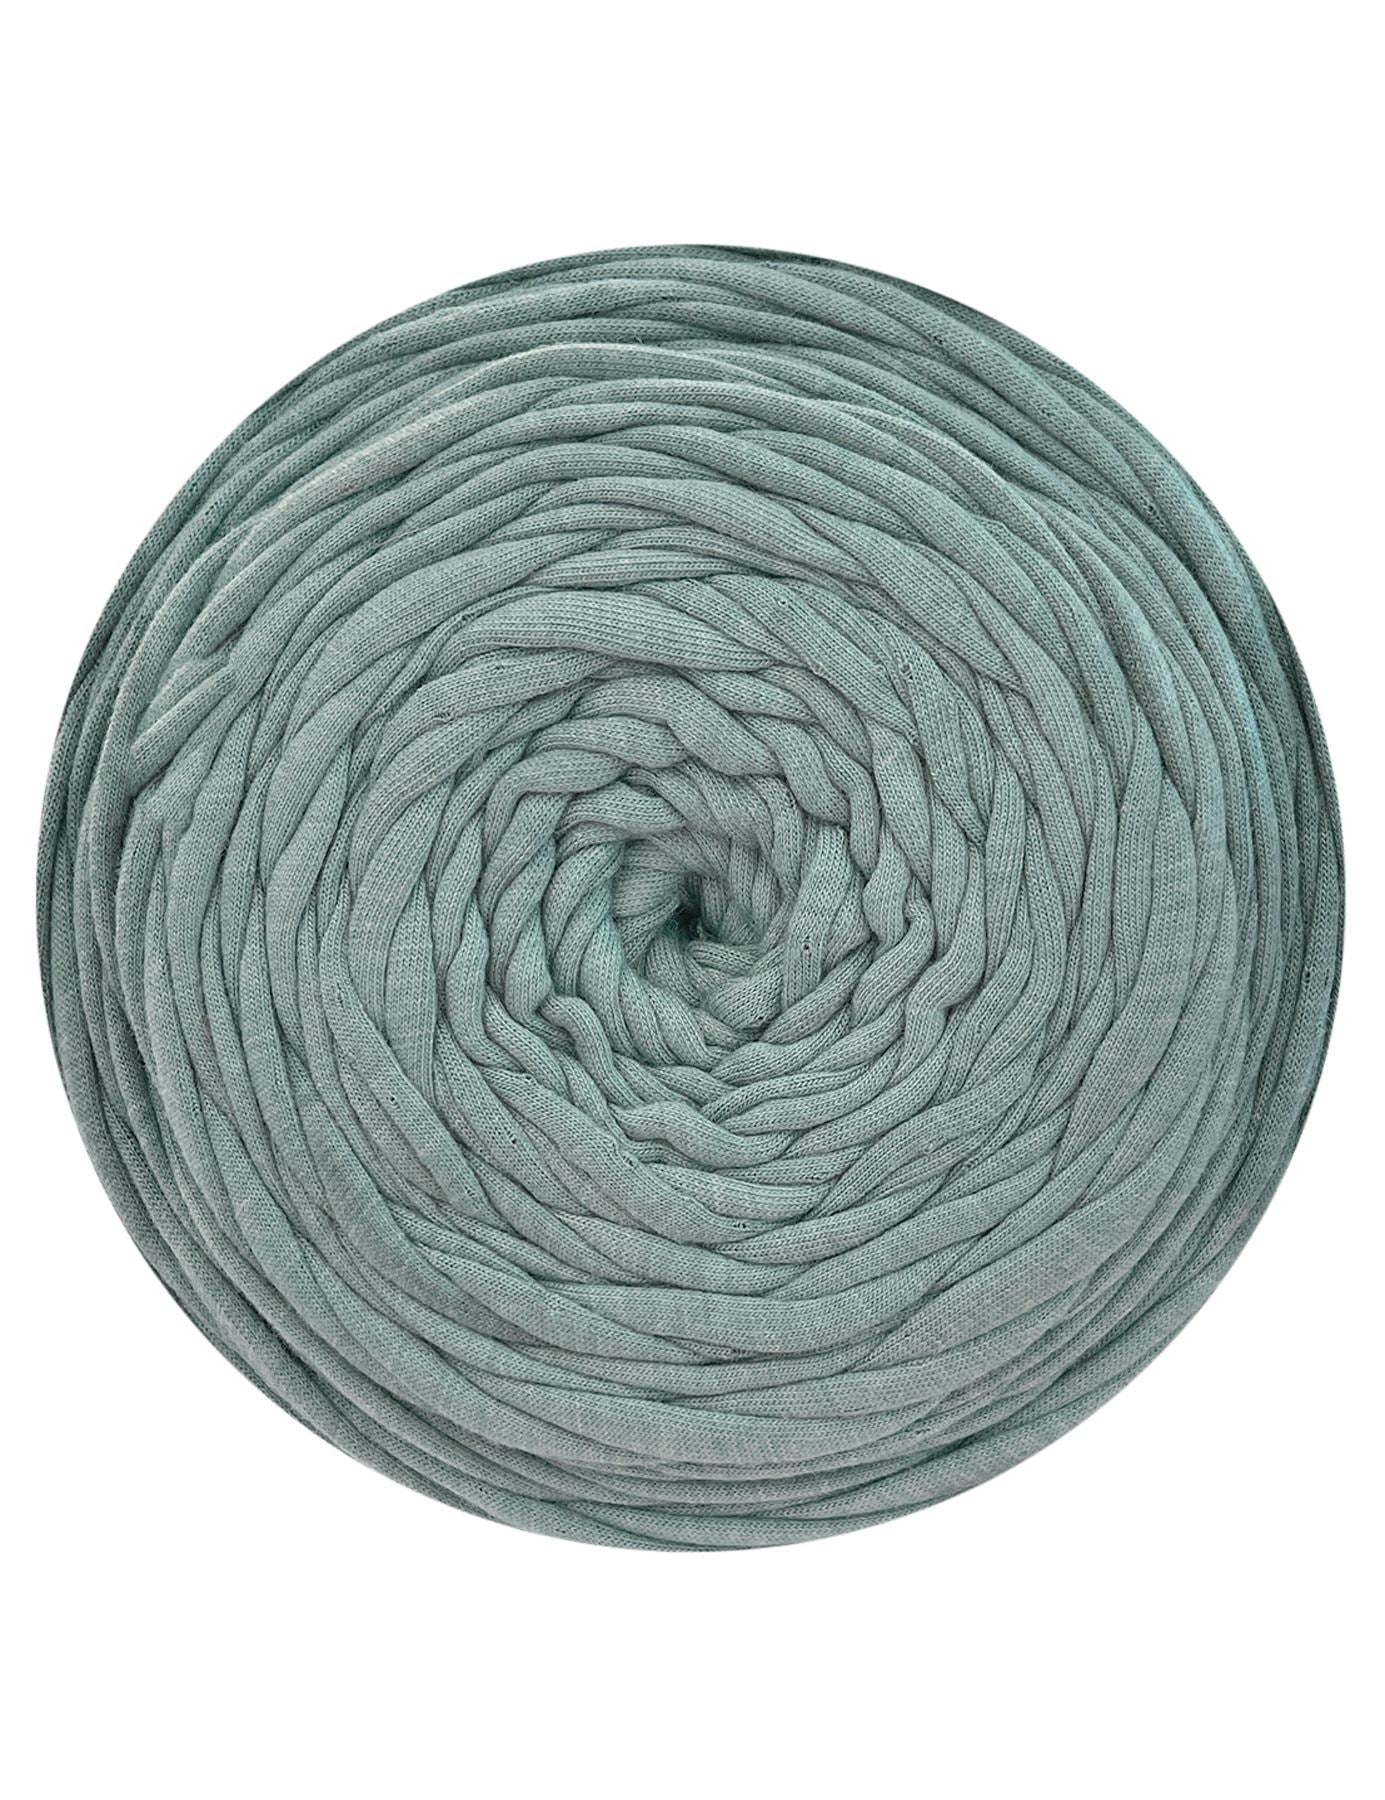 Muted steel blue t-shirt yarn (100-120m)